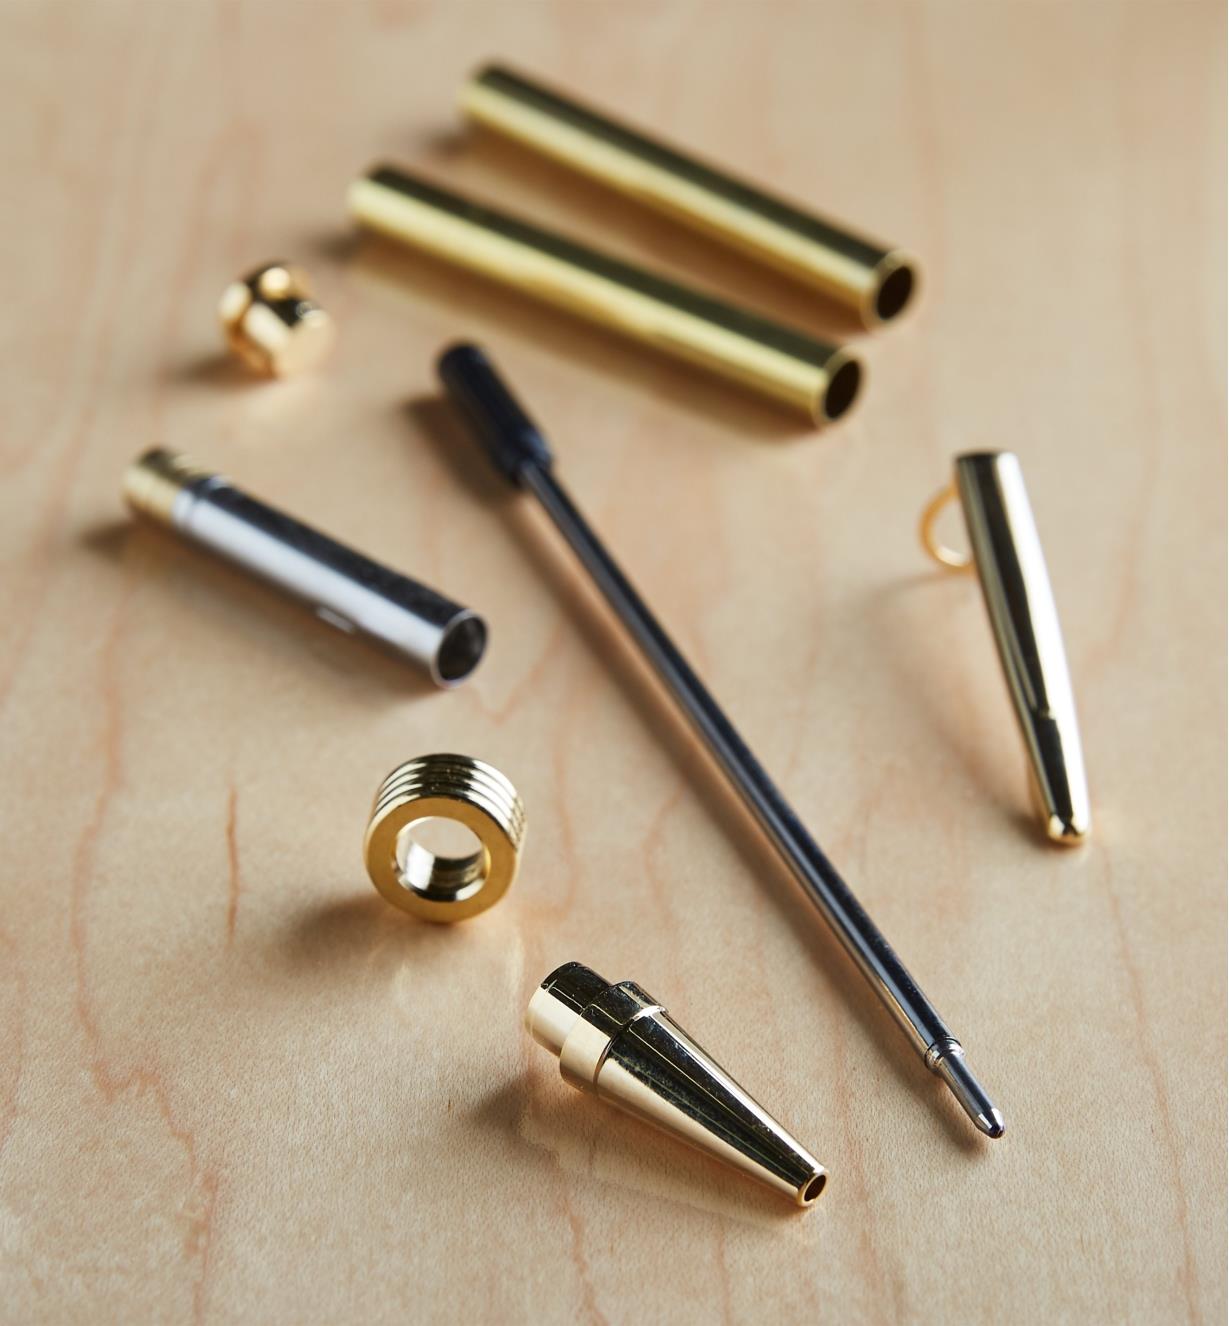 88K7800 - Streamline Flat-Top Pen, Gold